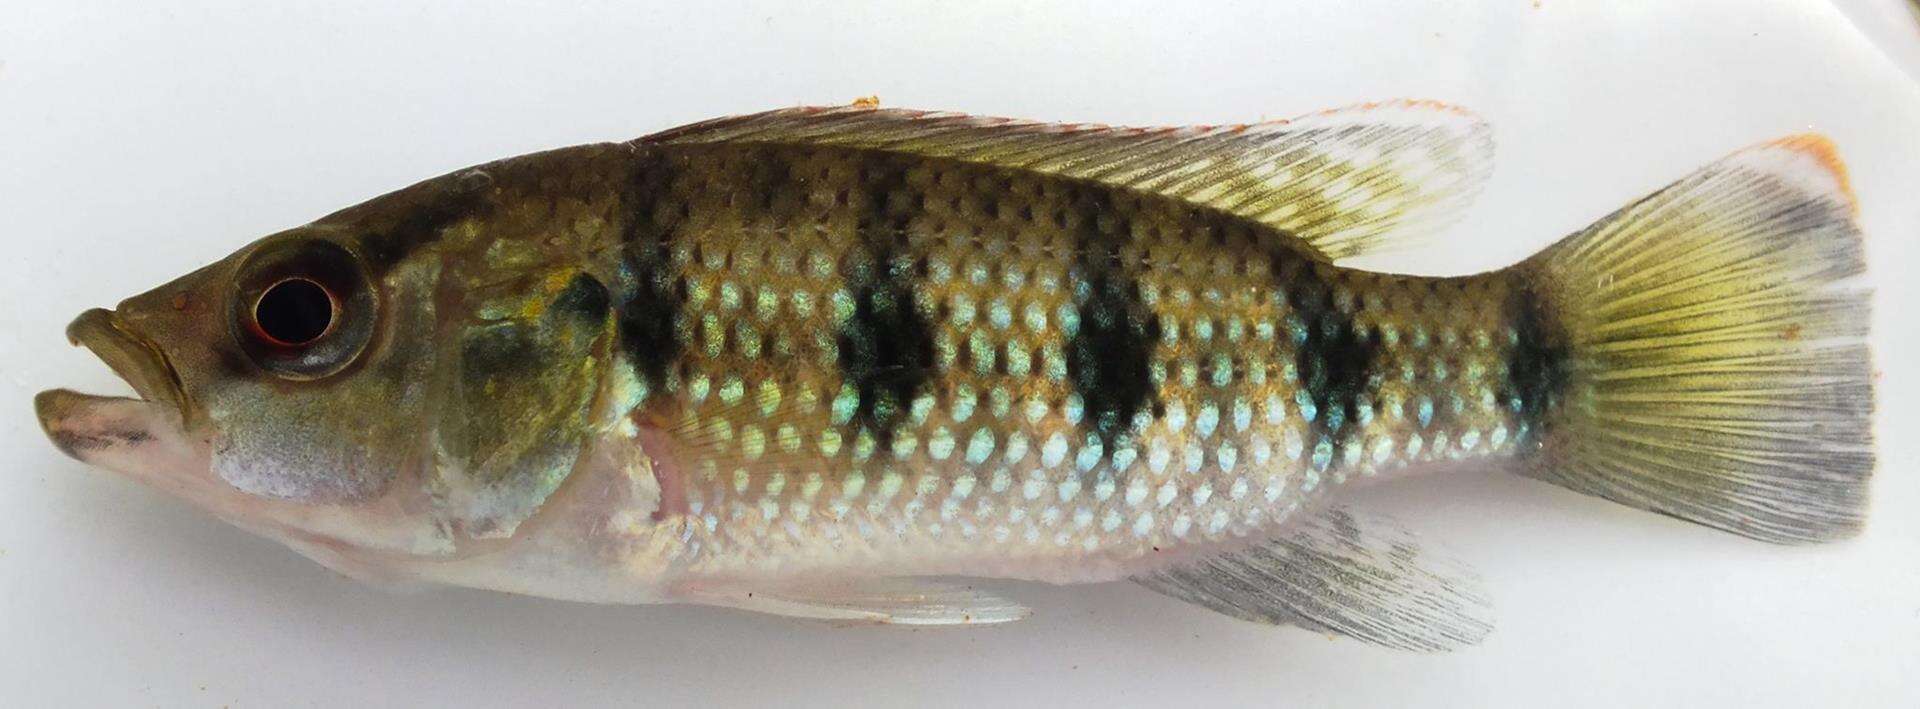 Image of Banded jewel cichlid